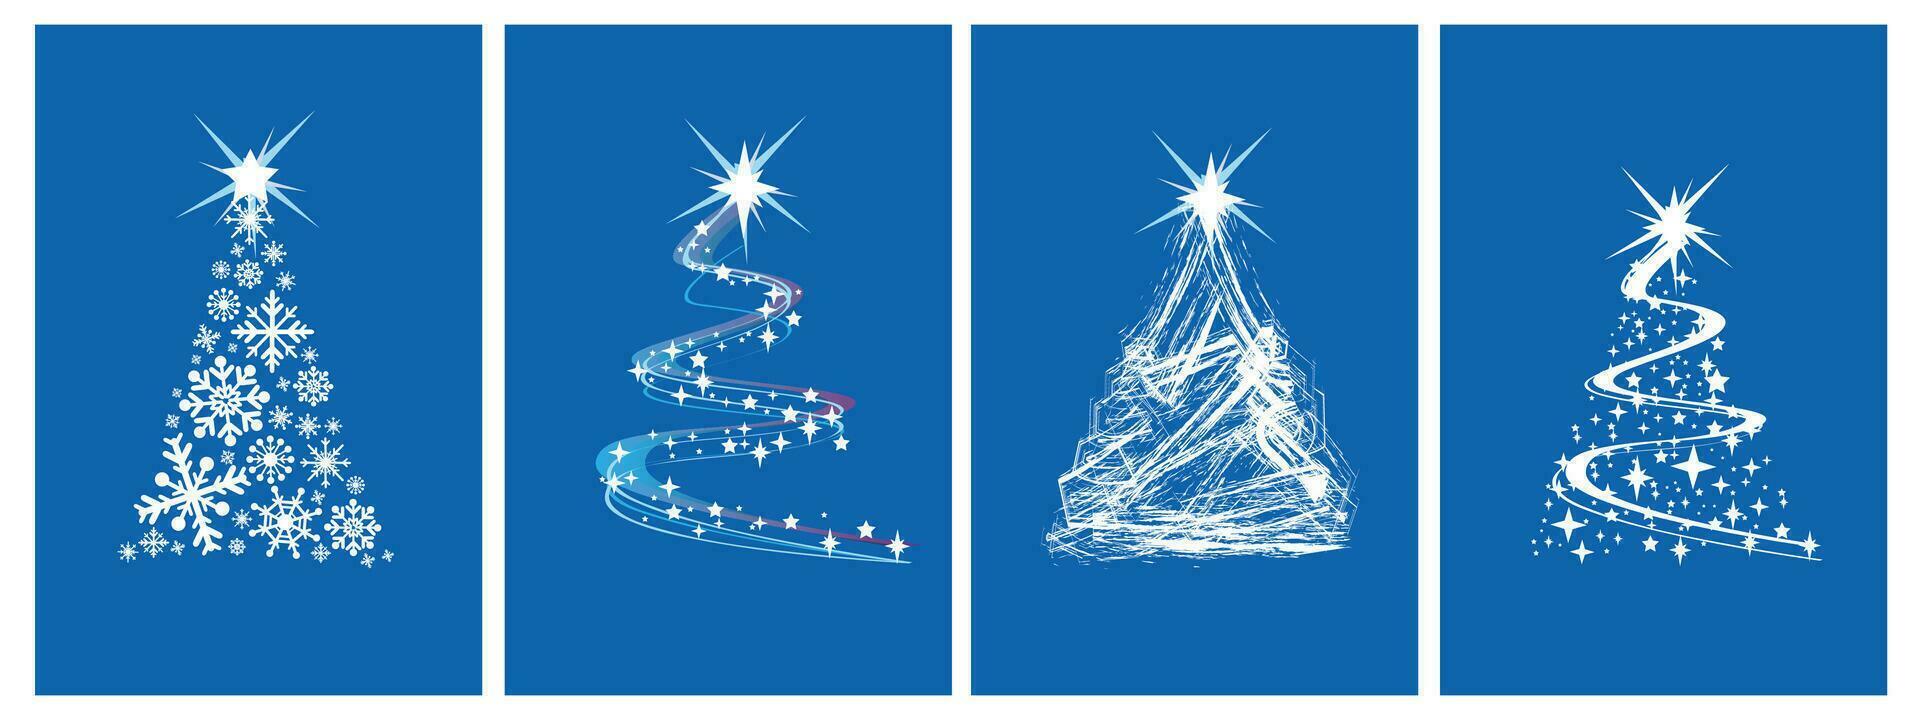 jul kort med blå magi träd. uppsättning av stråle vektor stiliserade jul träd på blå bakgrund vektor illustration.